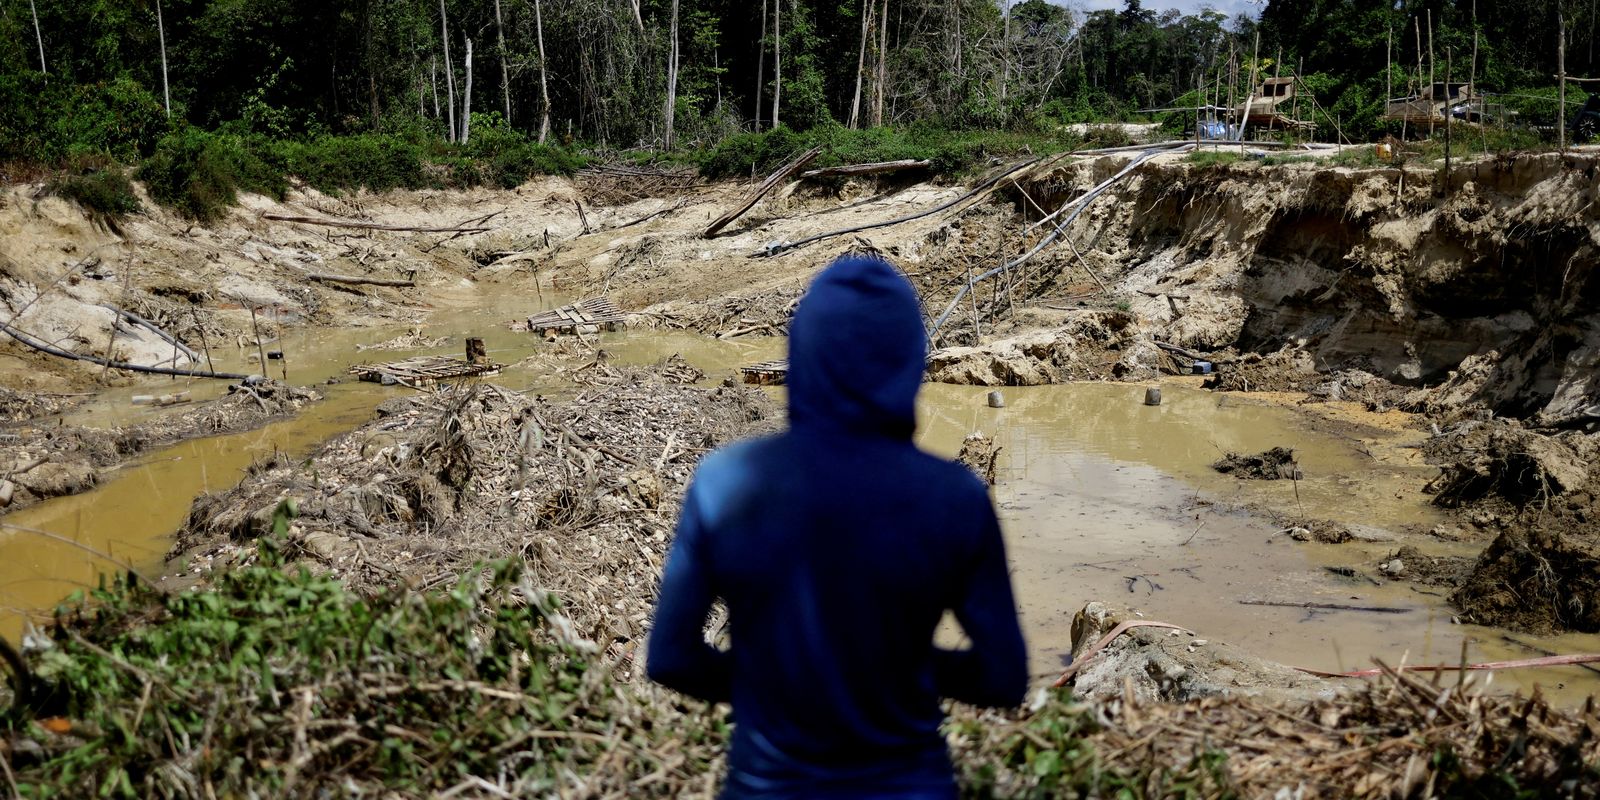 Atividades ilegais e impunidade desafiam autoridades na Amazônia Legal